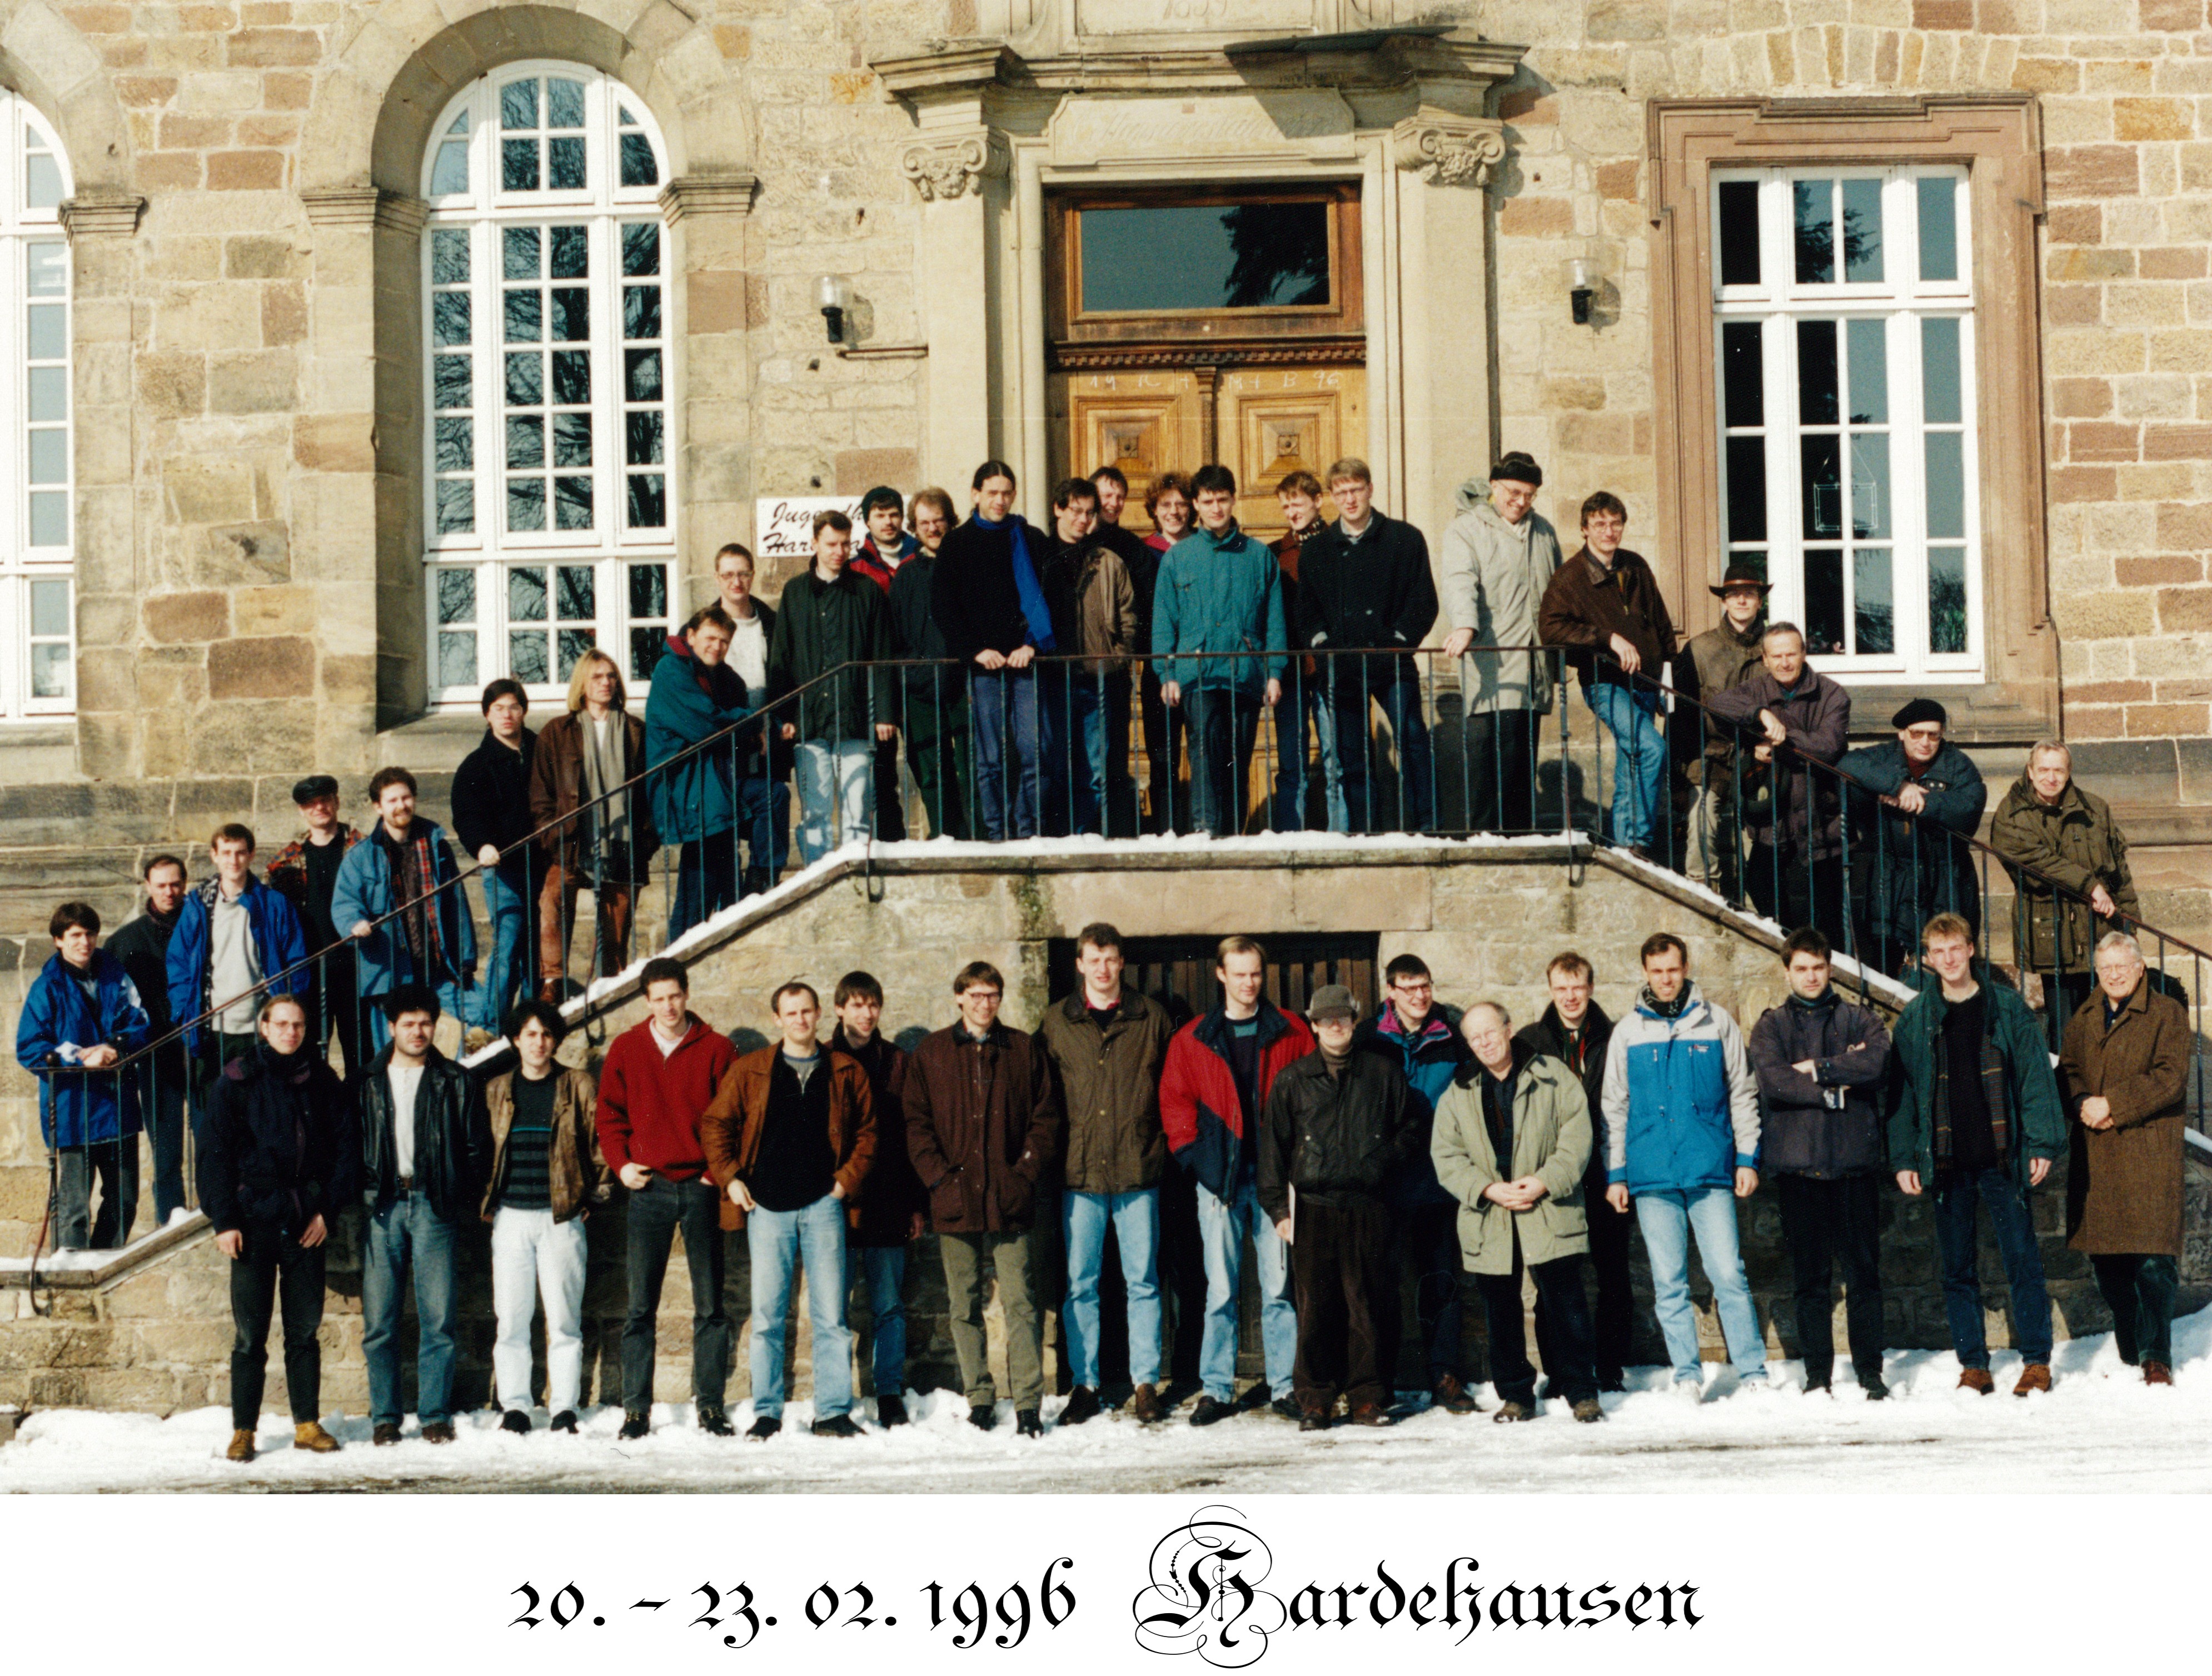 At Hardehausen, 1996